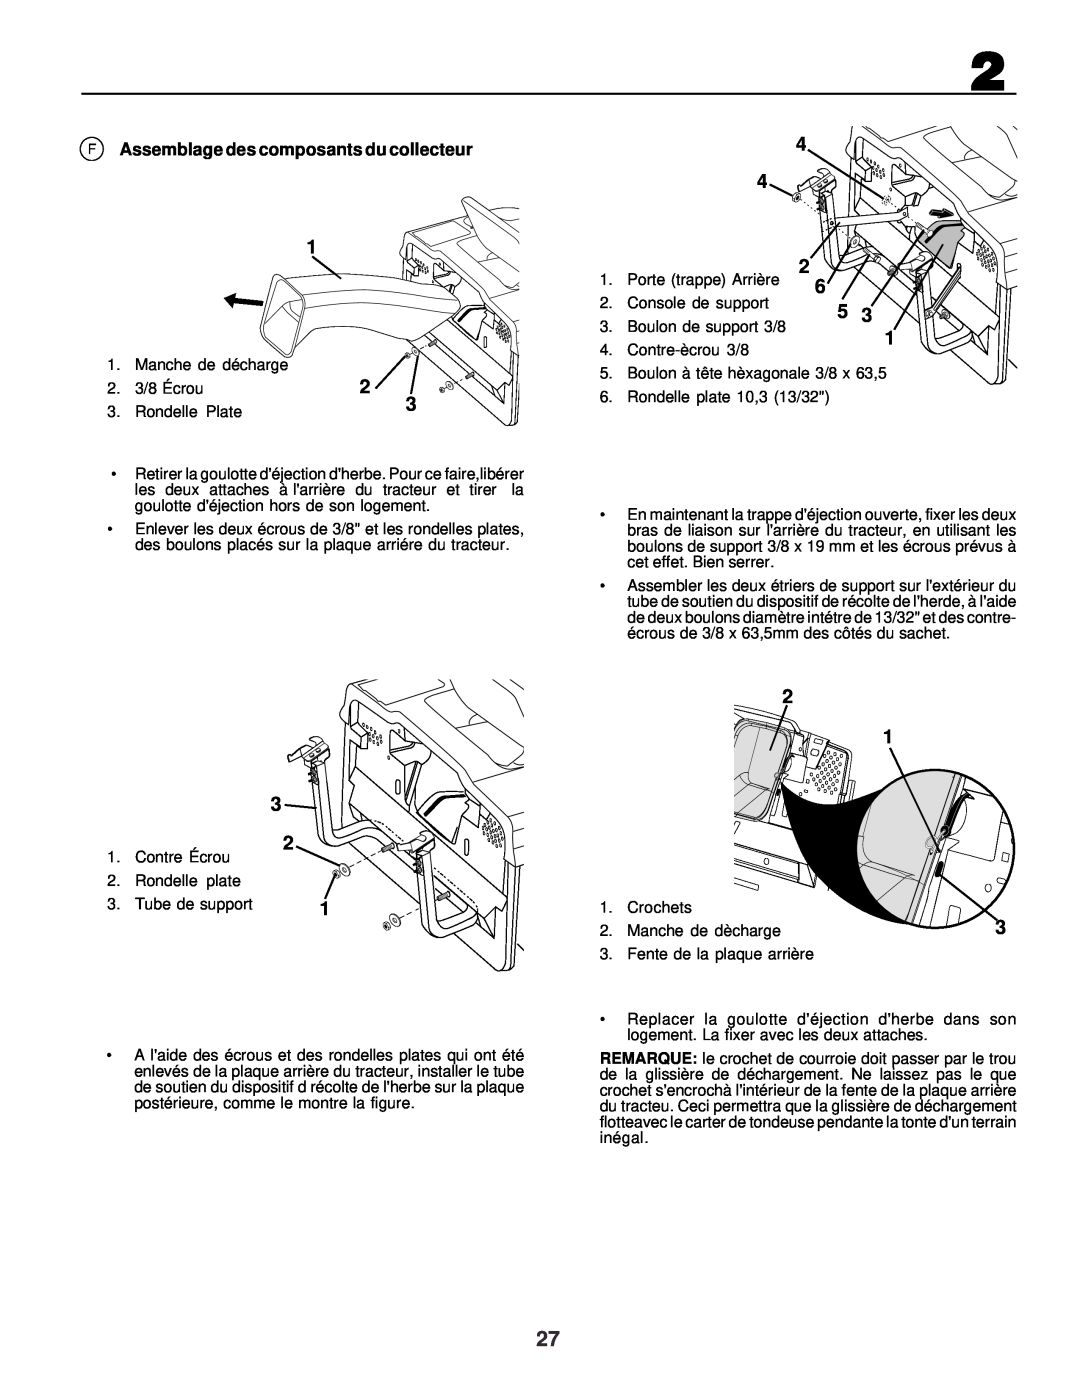 Husqvarna CTH130 instruction manual F Assemblage des composants du collecteur 